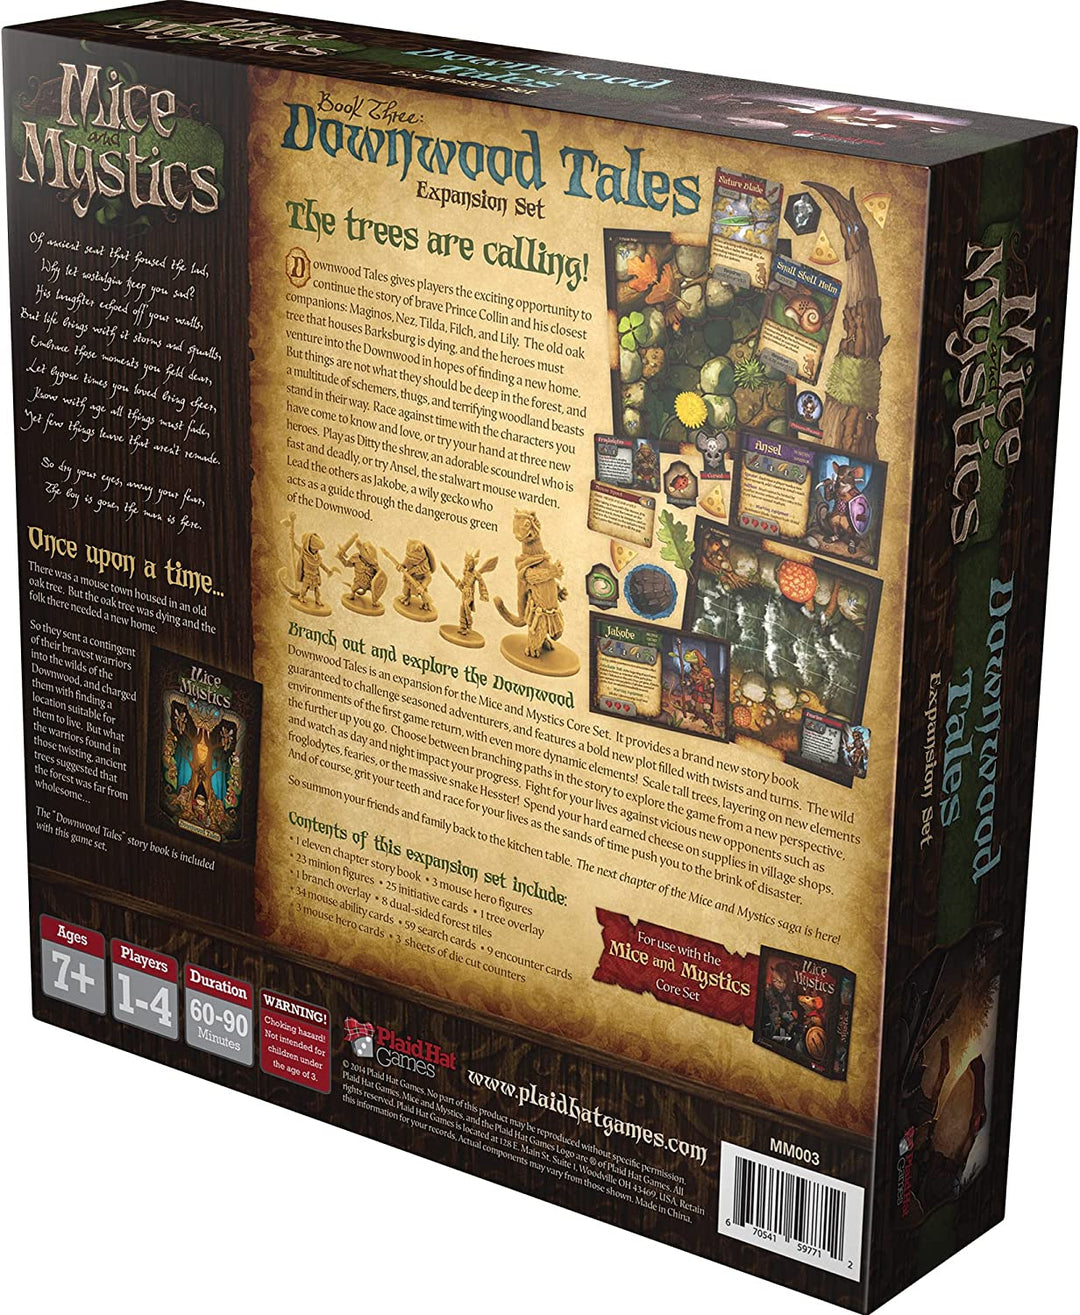 Spiele mit karierten Hüten | Downwood Tales: Mäuse und Mystiker exp. | Brettspiel | Ab 7 Jahren |